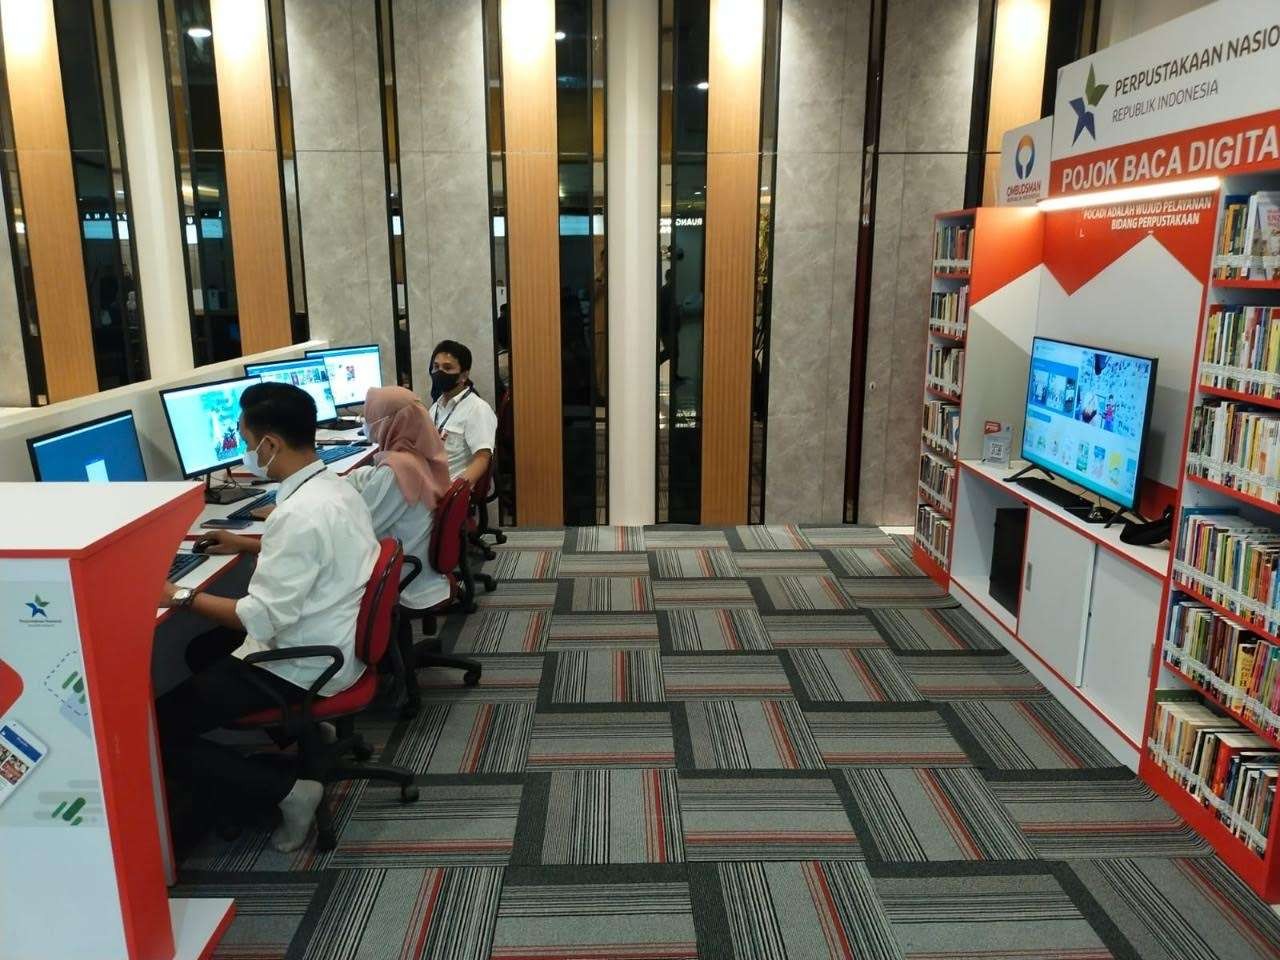 Pojok Baca Digital di Siola Surabaya yang bisa dipergunakan untuk meningkatkan minat baca. (Foto: Humas Pemkot Surabaya)